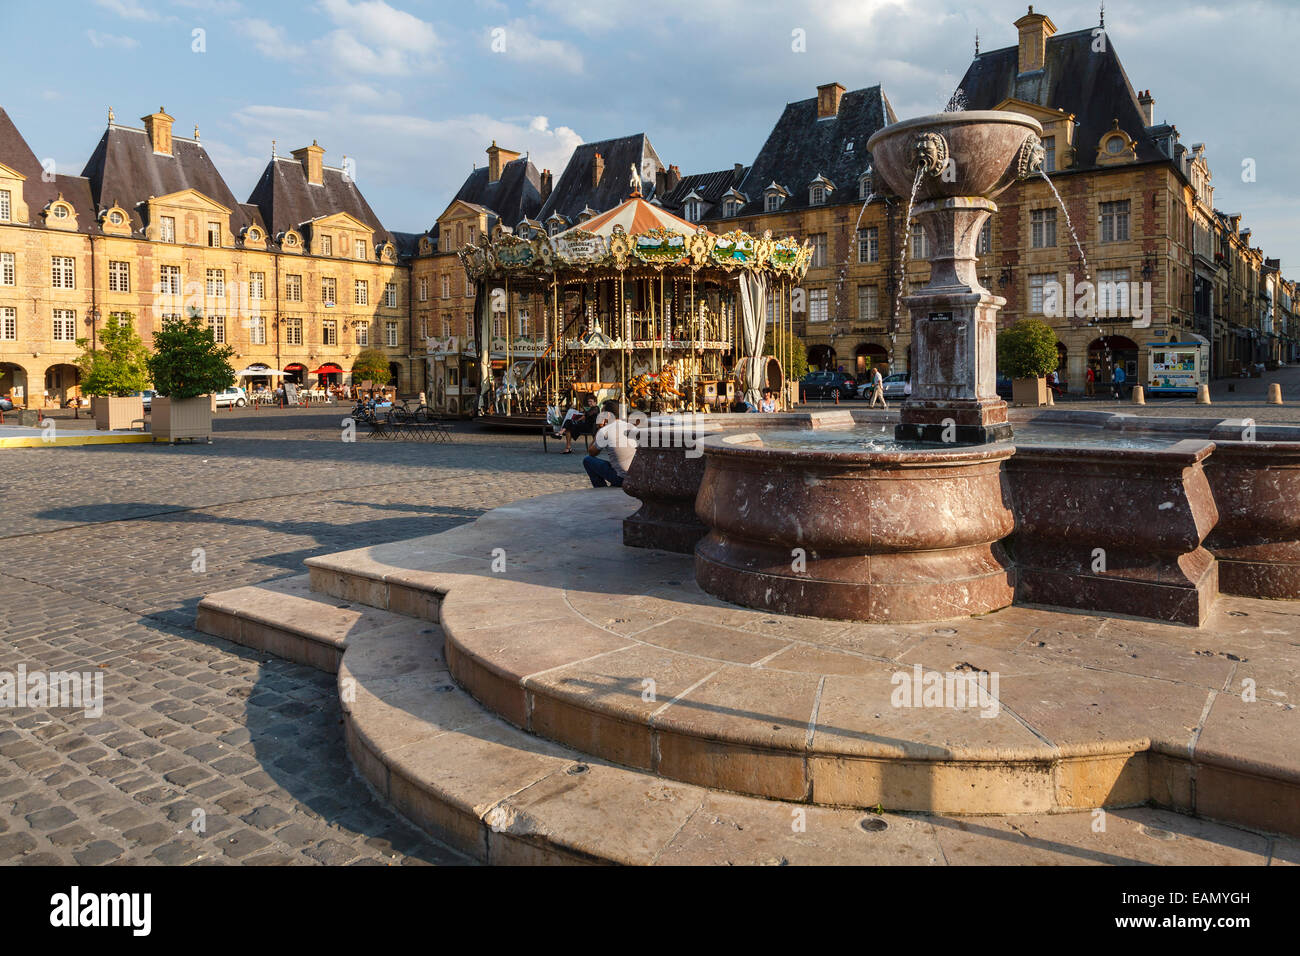 Place Ducale, Charleville-Mézières, Ardennes, France Stock Photo